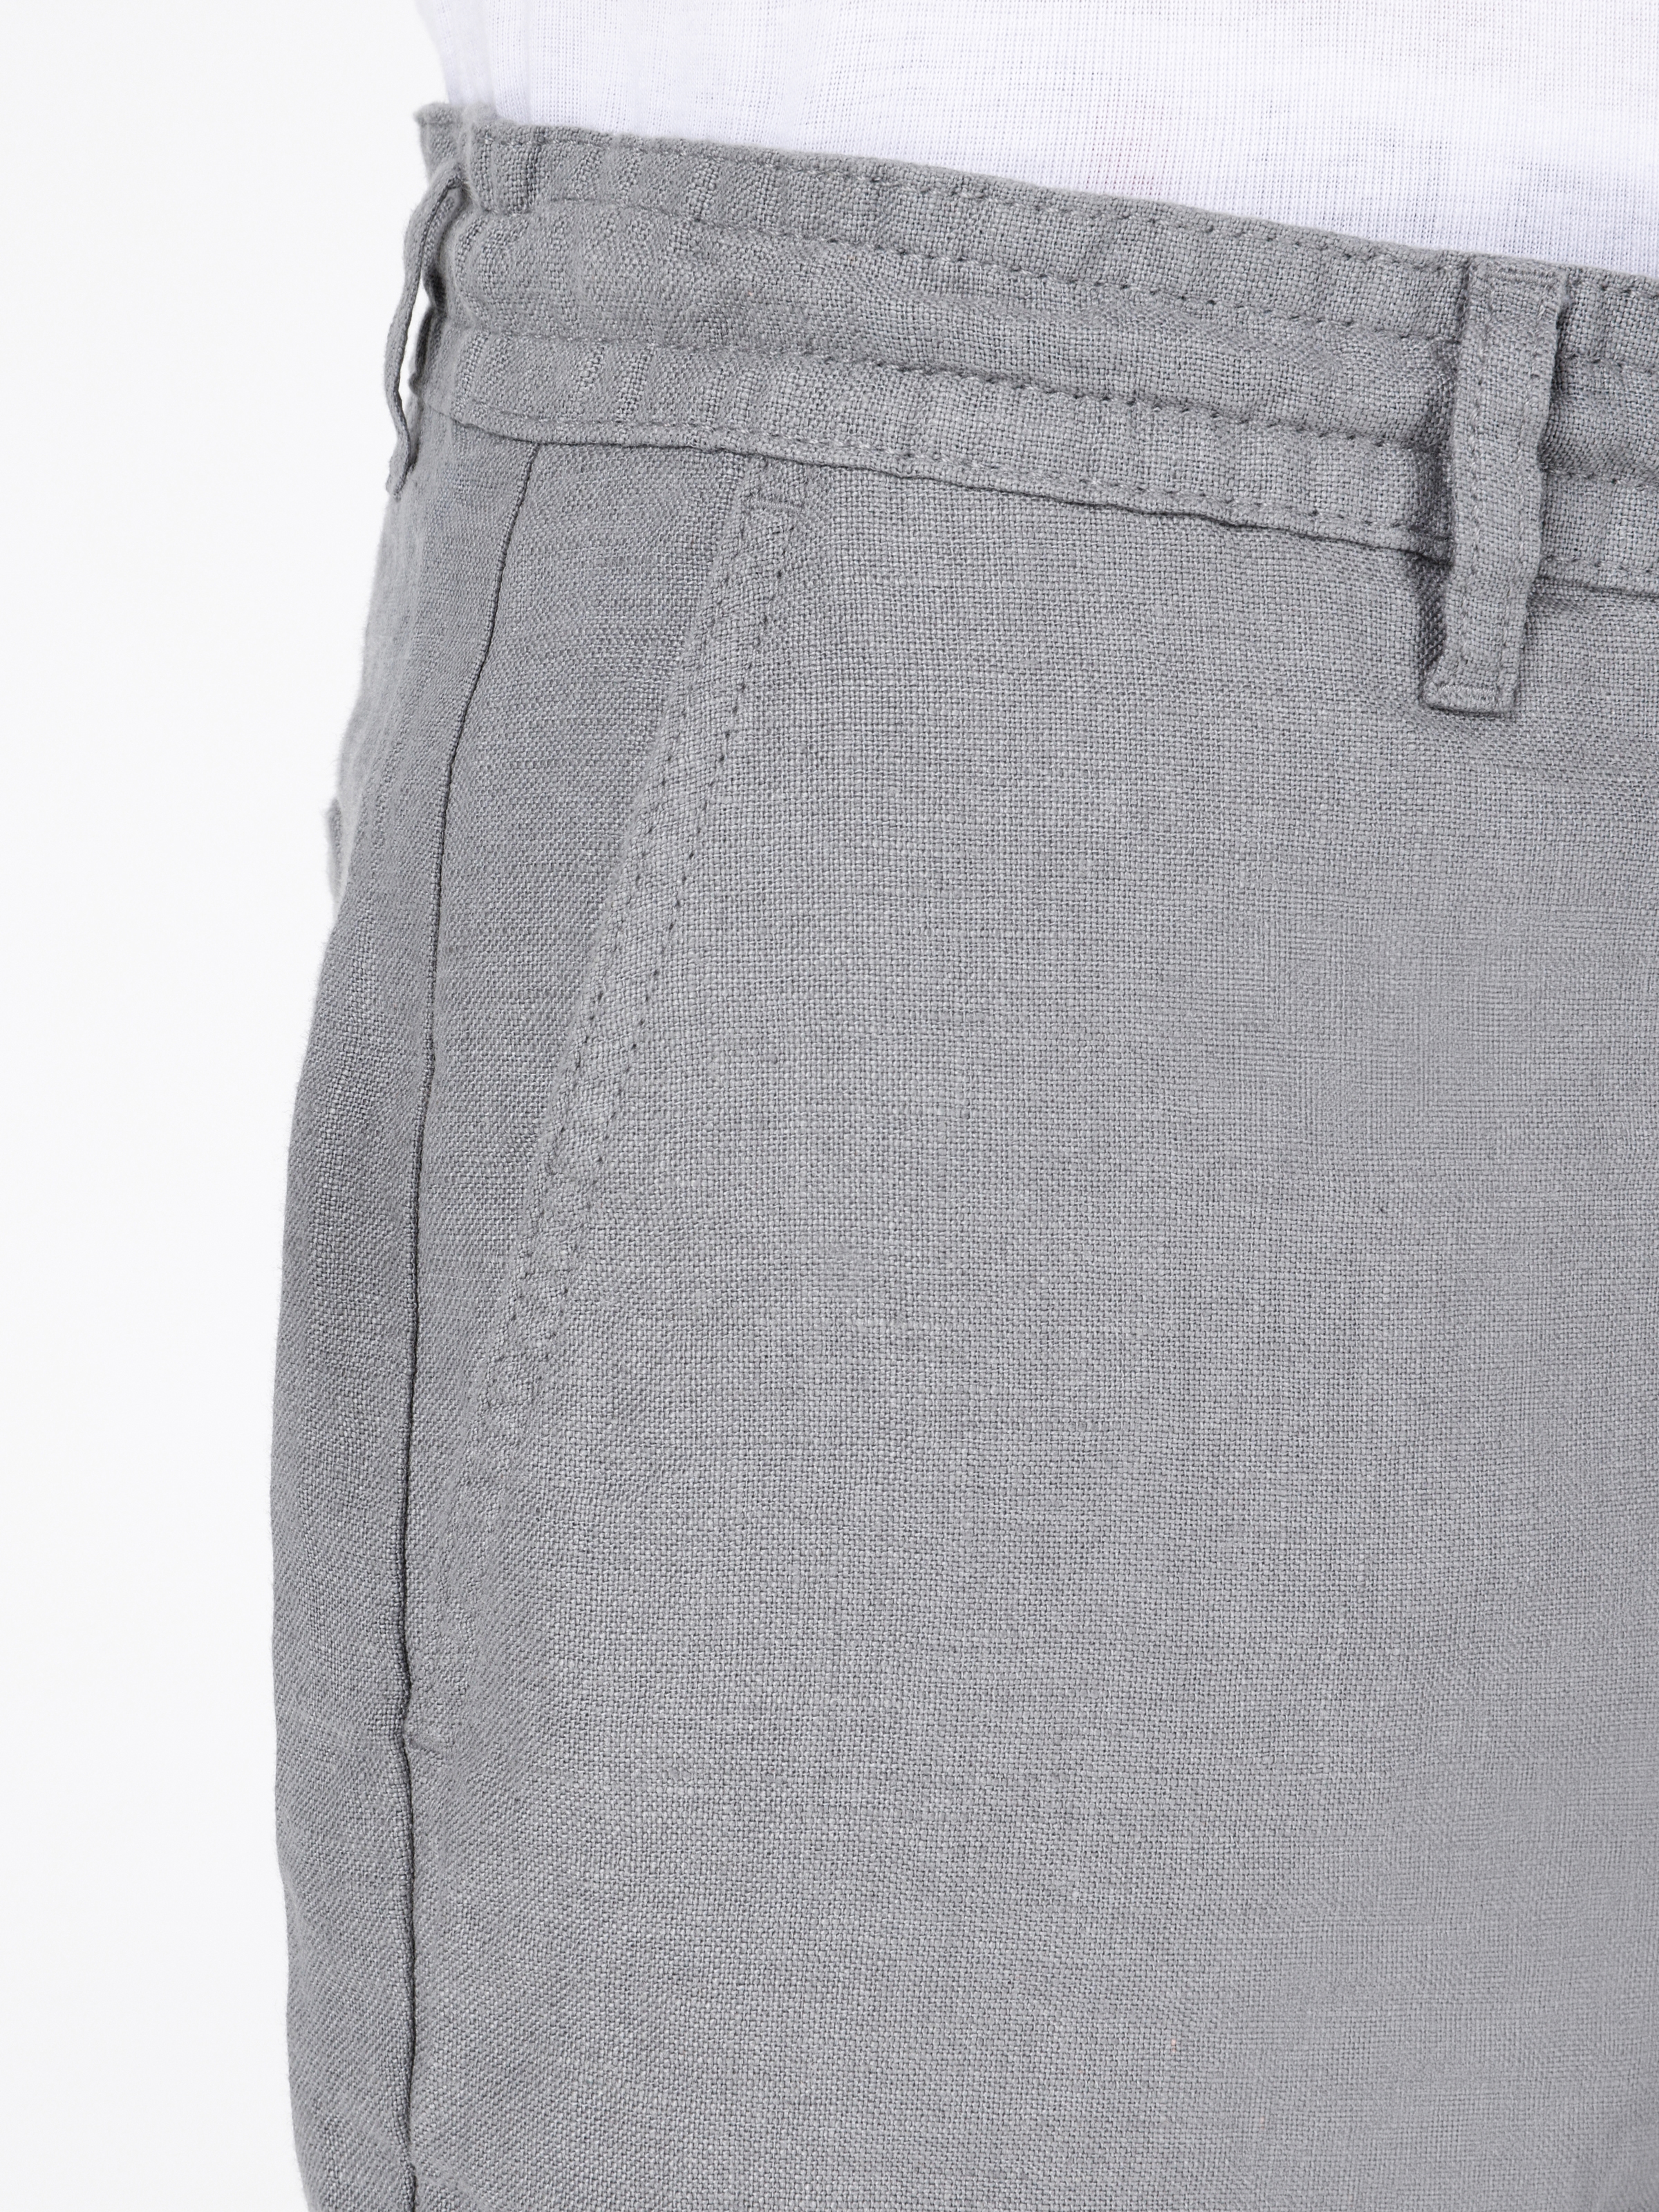 Afișați detalii pentru Short / Pantaloni Scurti De Barbati Kaki Regular Fit  